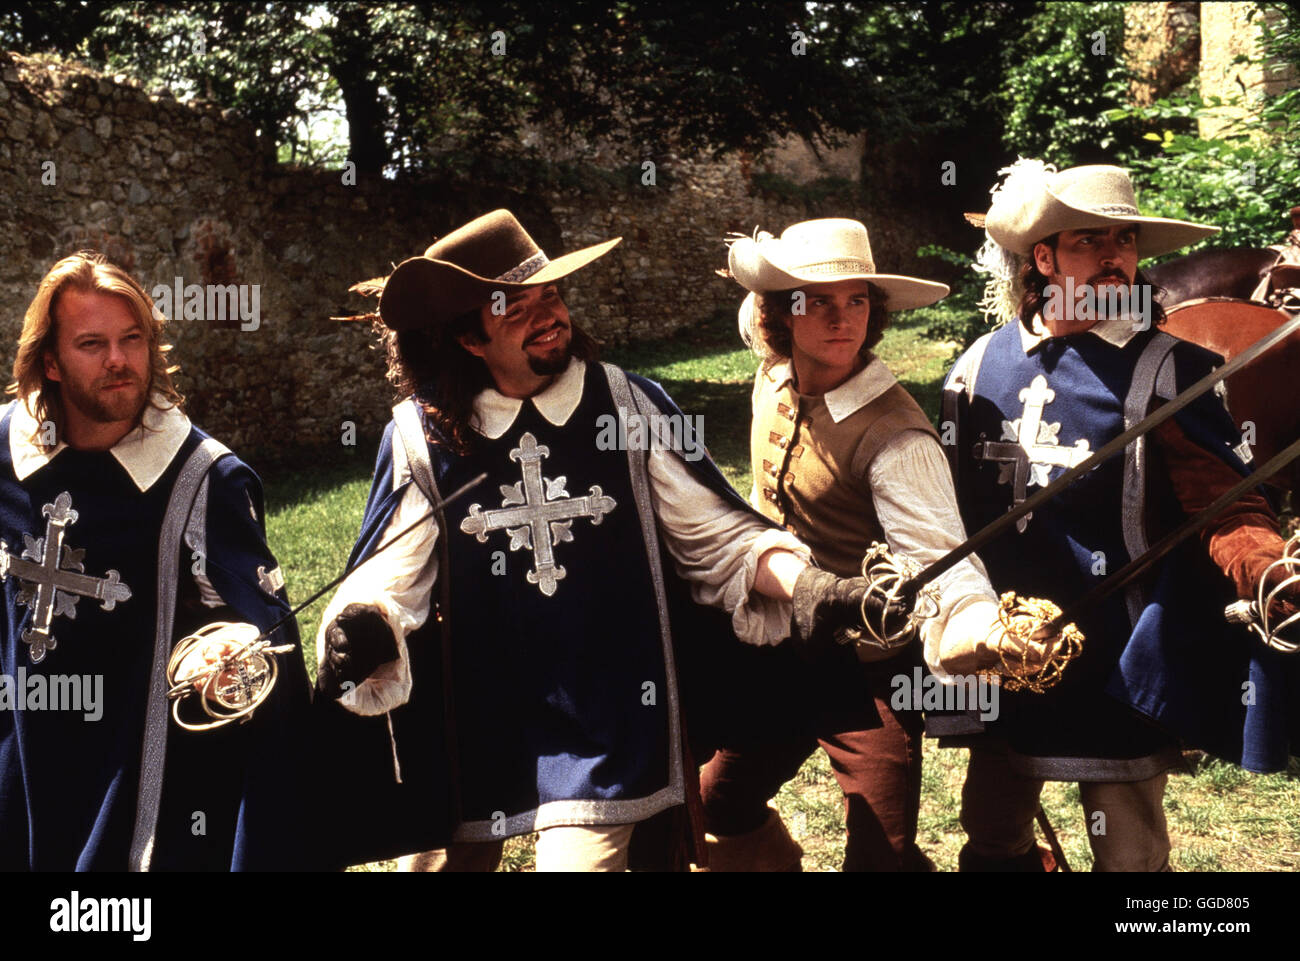 DIE DREI MUSKETIERE / Les Trois Mousquetaires USA 1993 / Stephen Herek Szenenbild mit den drei Musketieren Aramis (Charlie Sheen, liens), Porthos (OLIVER PLATT, 2.von recchts), Athos (Kiefer SUTHERLAND, 156) et d'Artagnan (CHRIS O"DONNEL). Regie : Stephen Herek aka. Les trois mousquetaires Banque D'Images